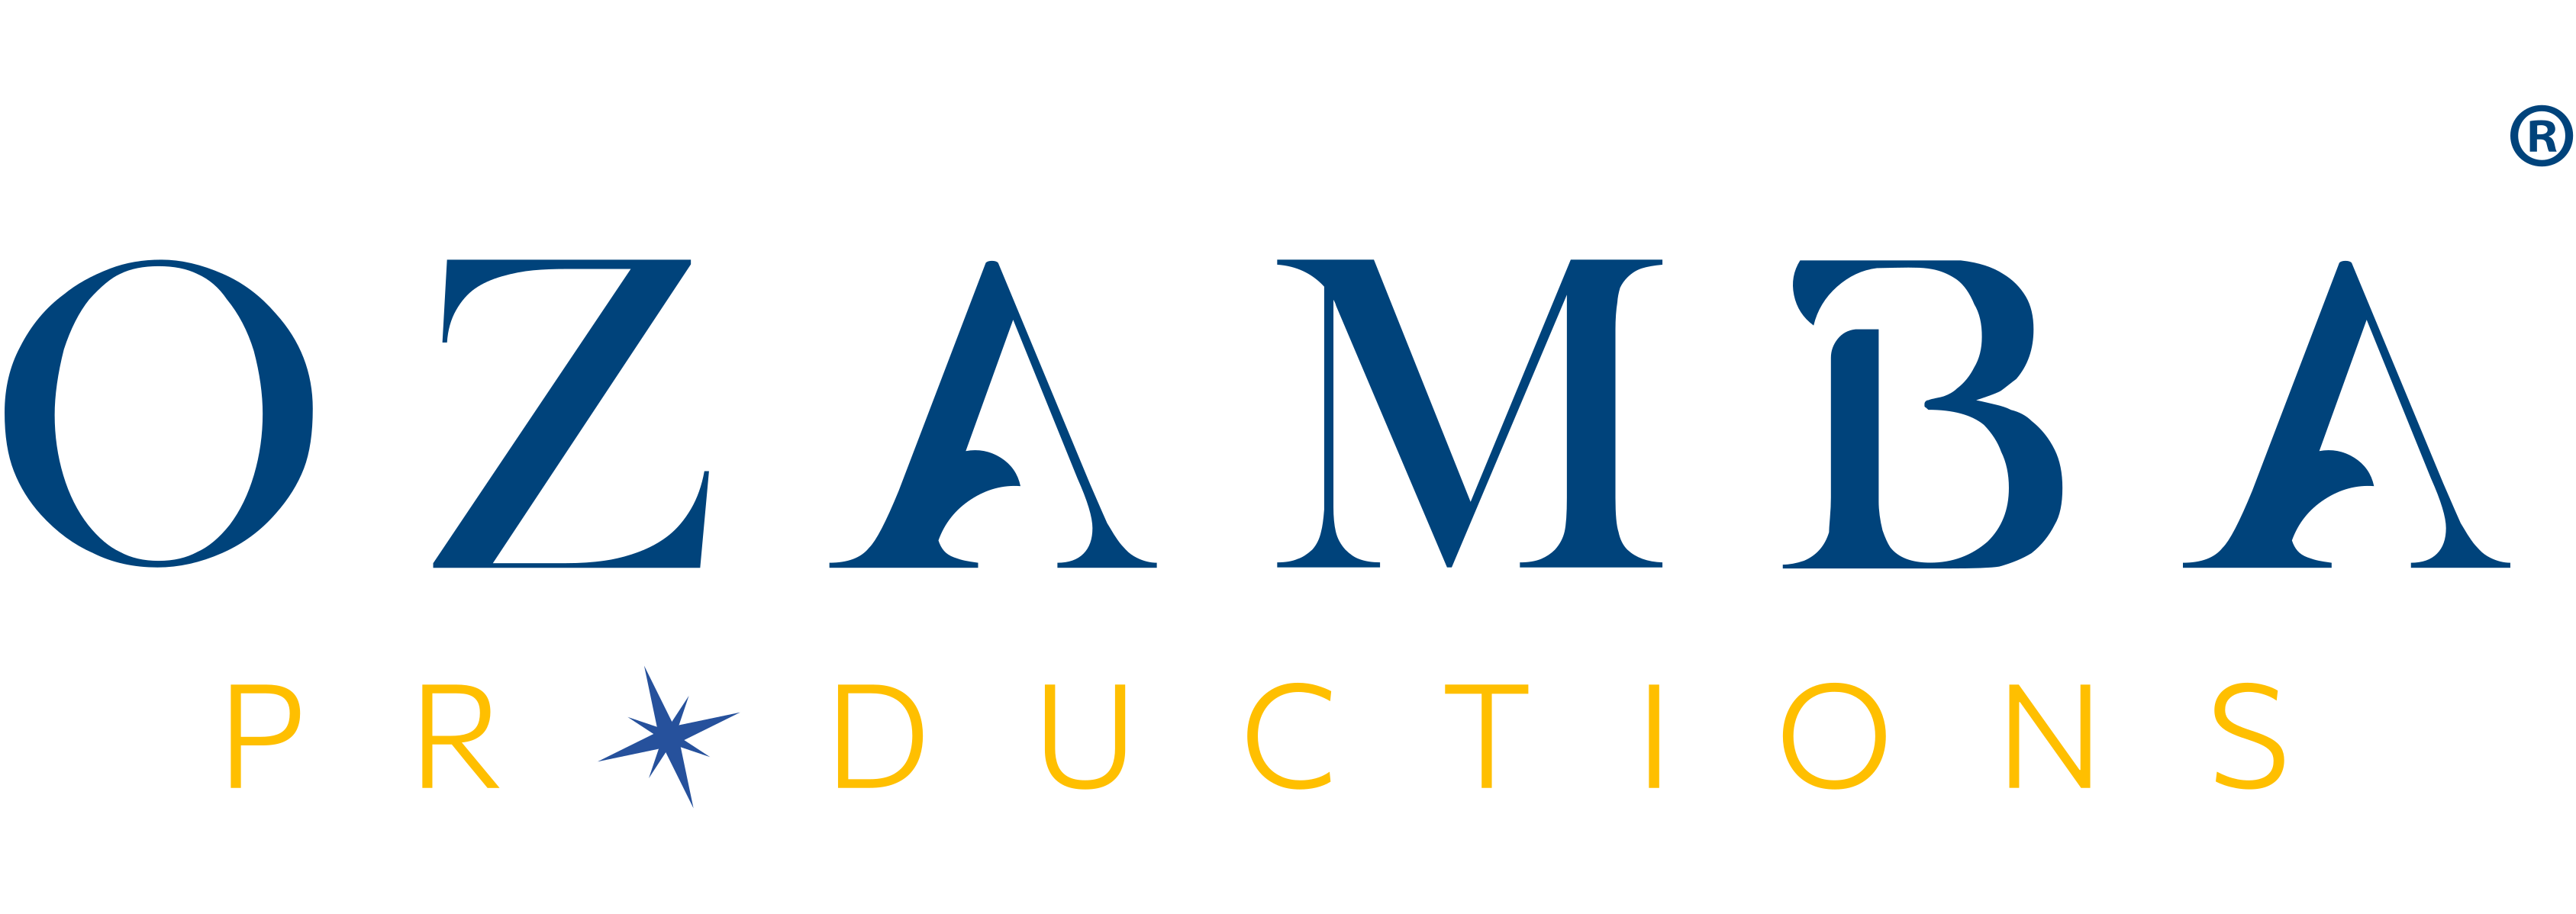 Ozamba Productions